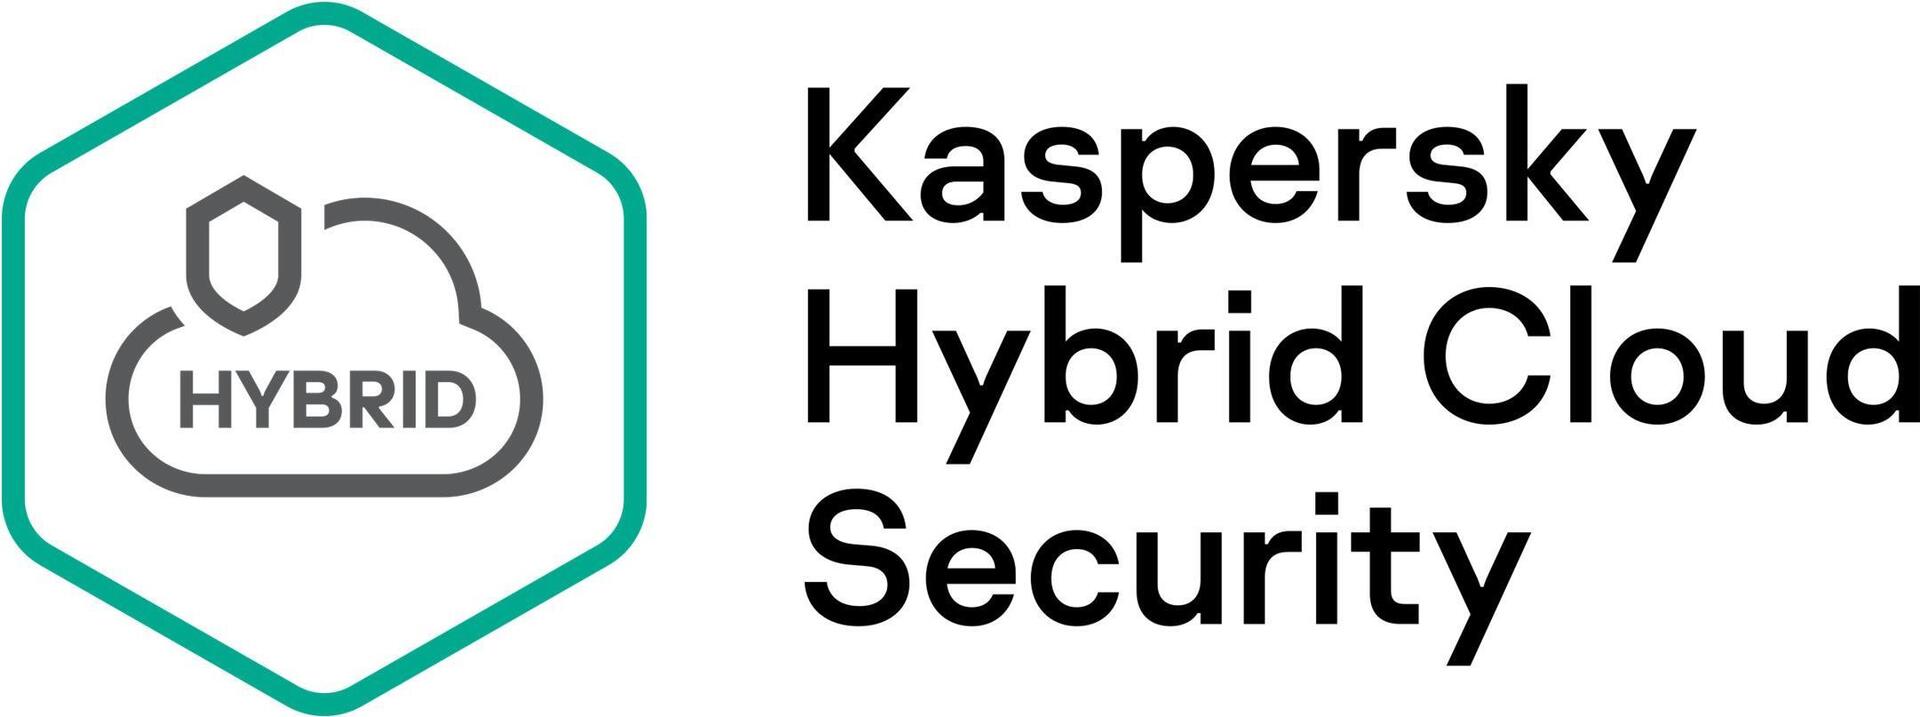 Kaspersky Hybrid Cloud Security Enterprise Edition, Desktop (KL4153XAMDR)